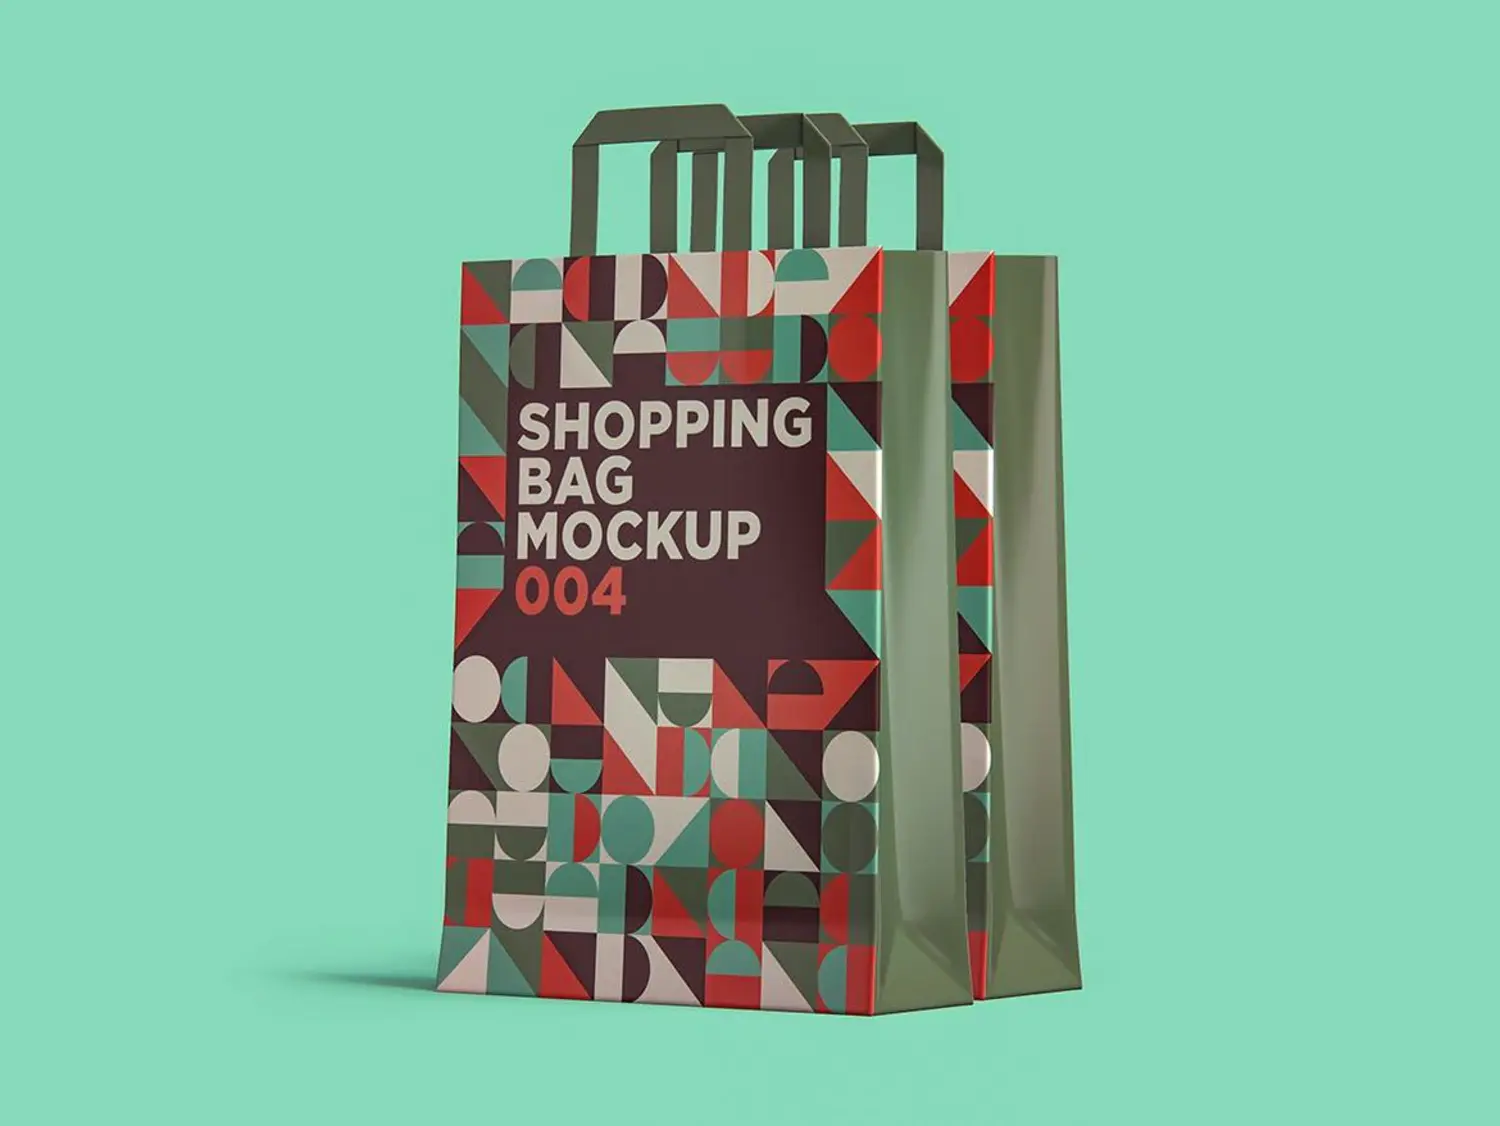 87 塑料光面无纺布袋手提袋购物袋外观品牌设计样机v4 Shopping Bag Mockup 004